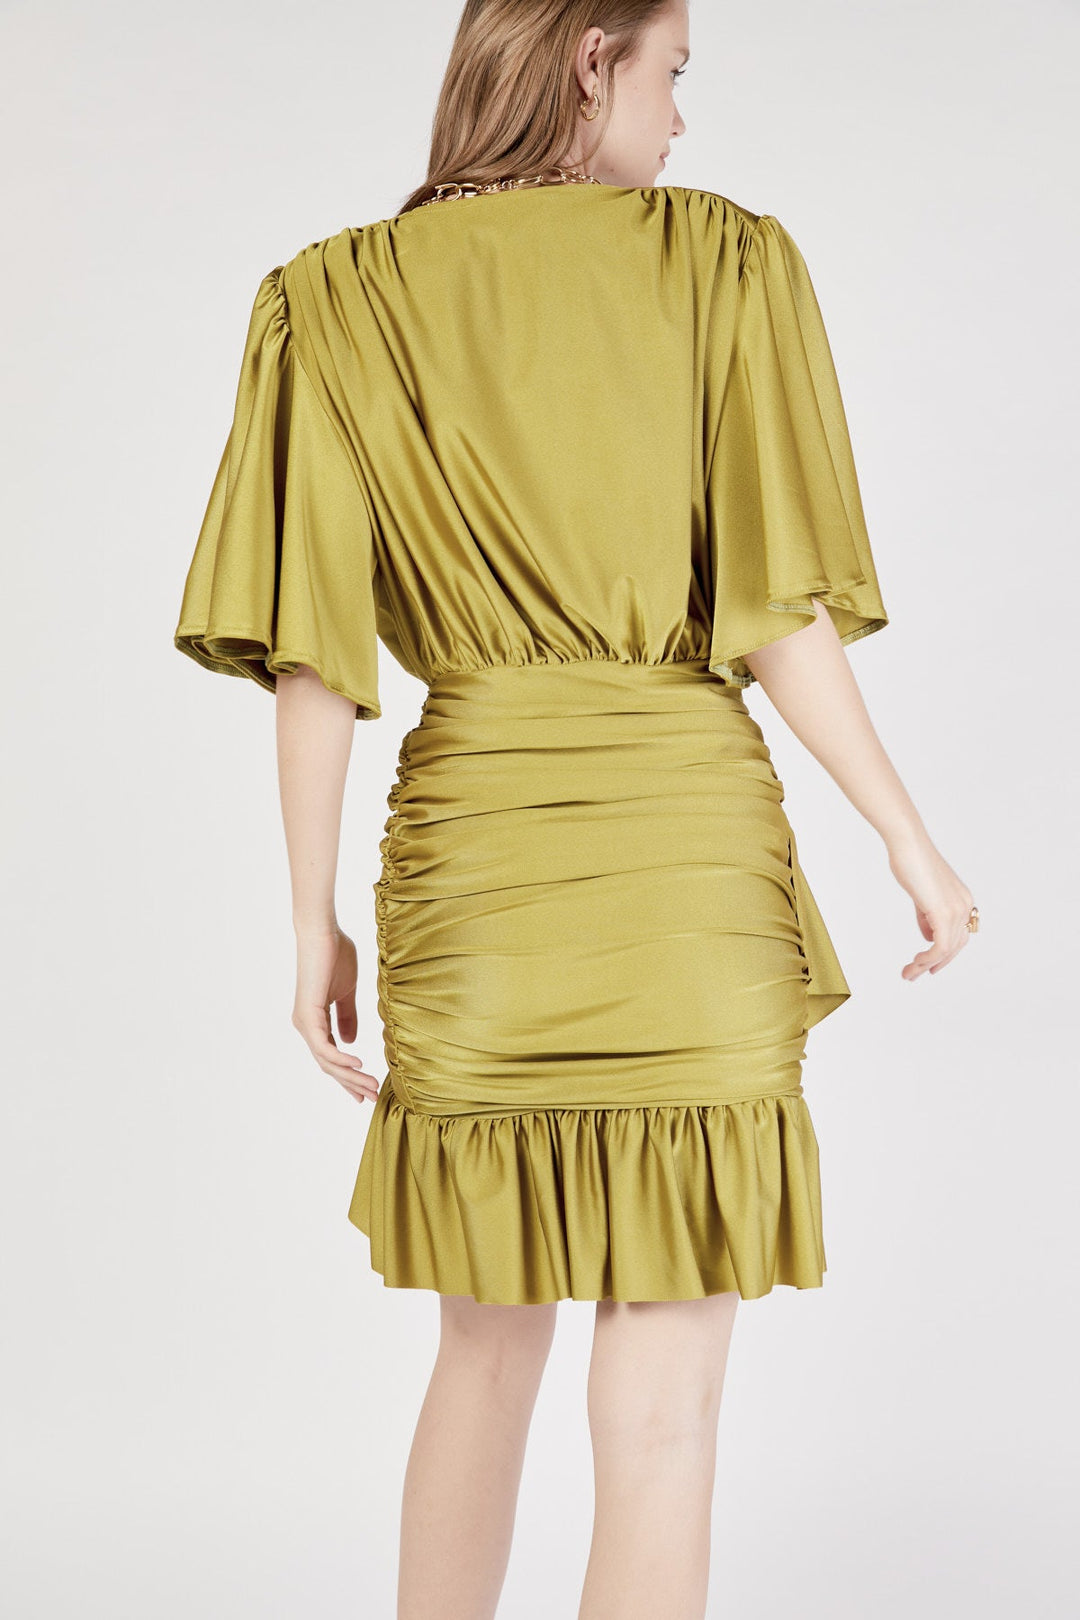 שמלת מיני ניקה בצבע ירוק - Dana Sidi